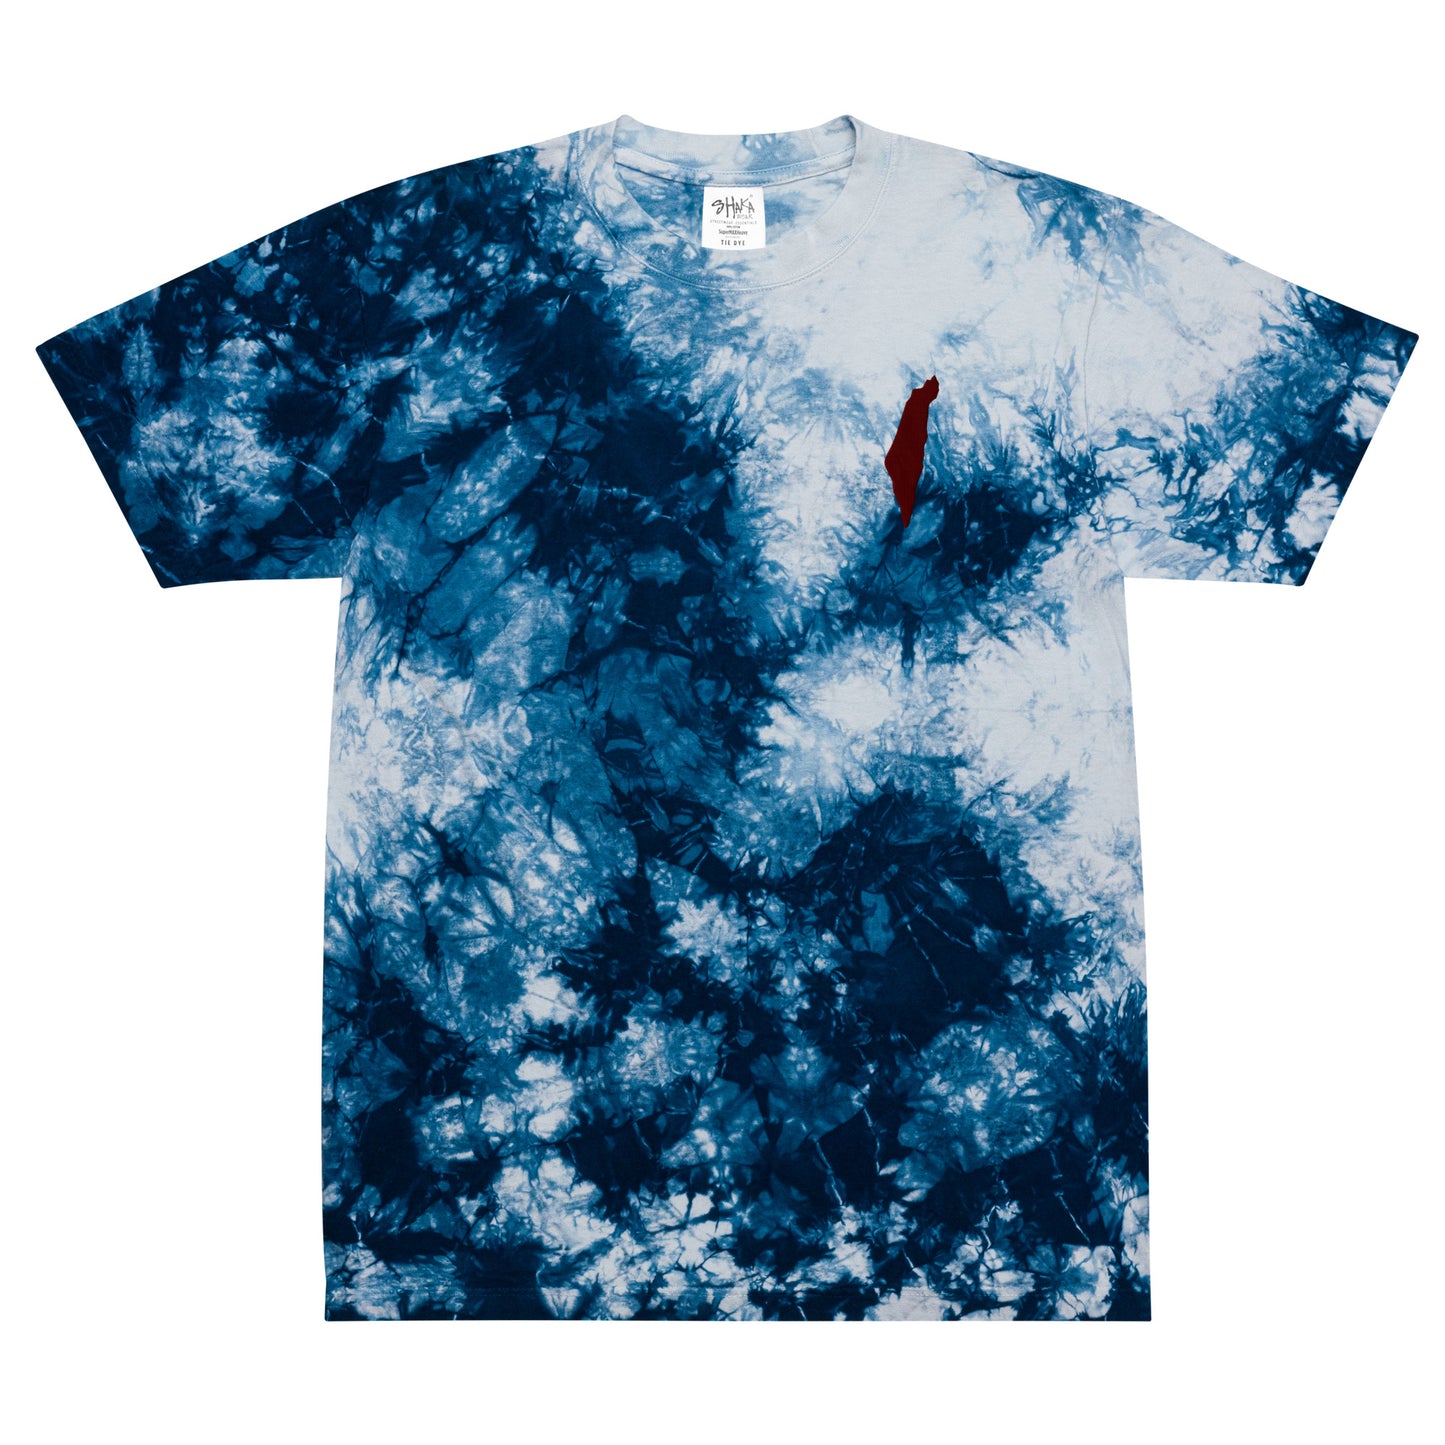 Camiseta con efecto tie-dye unisex de gran tamaño con mapa de Israel